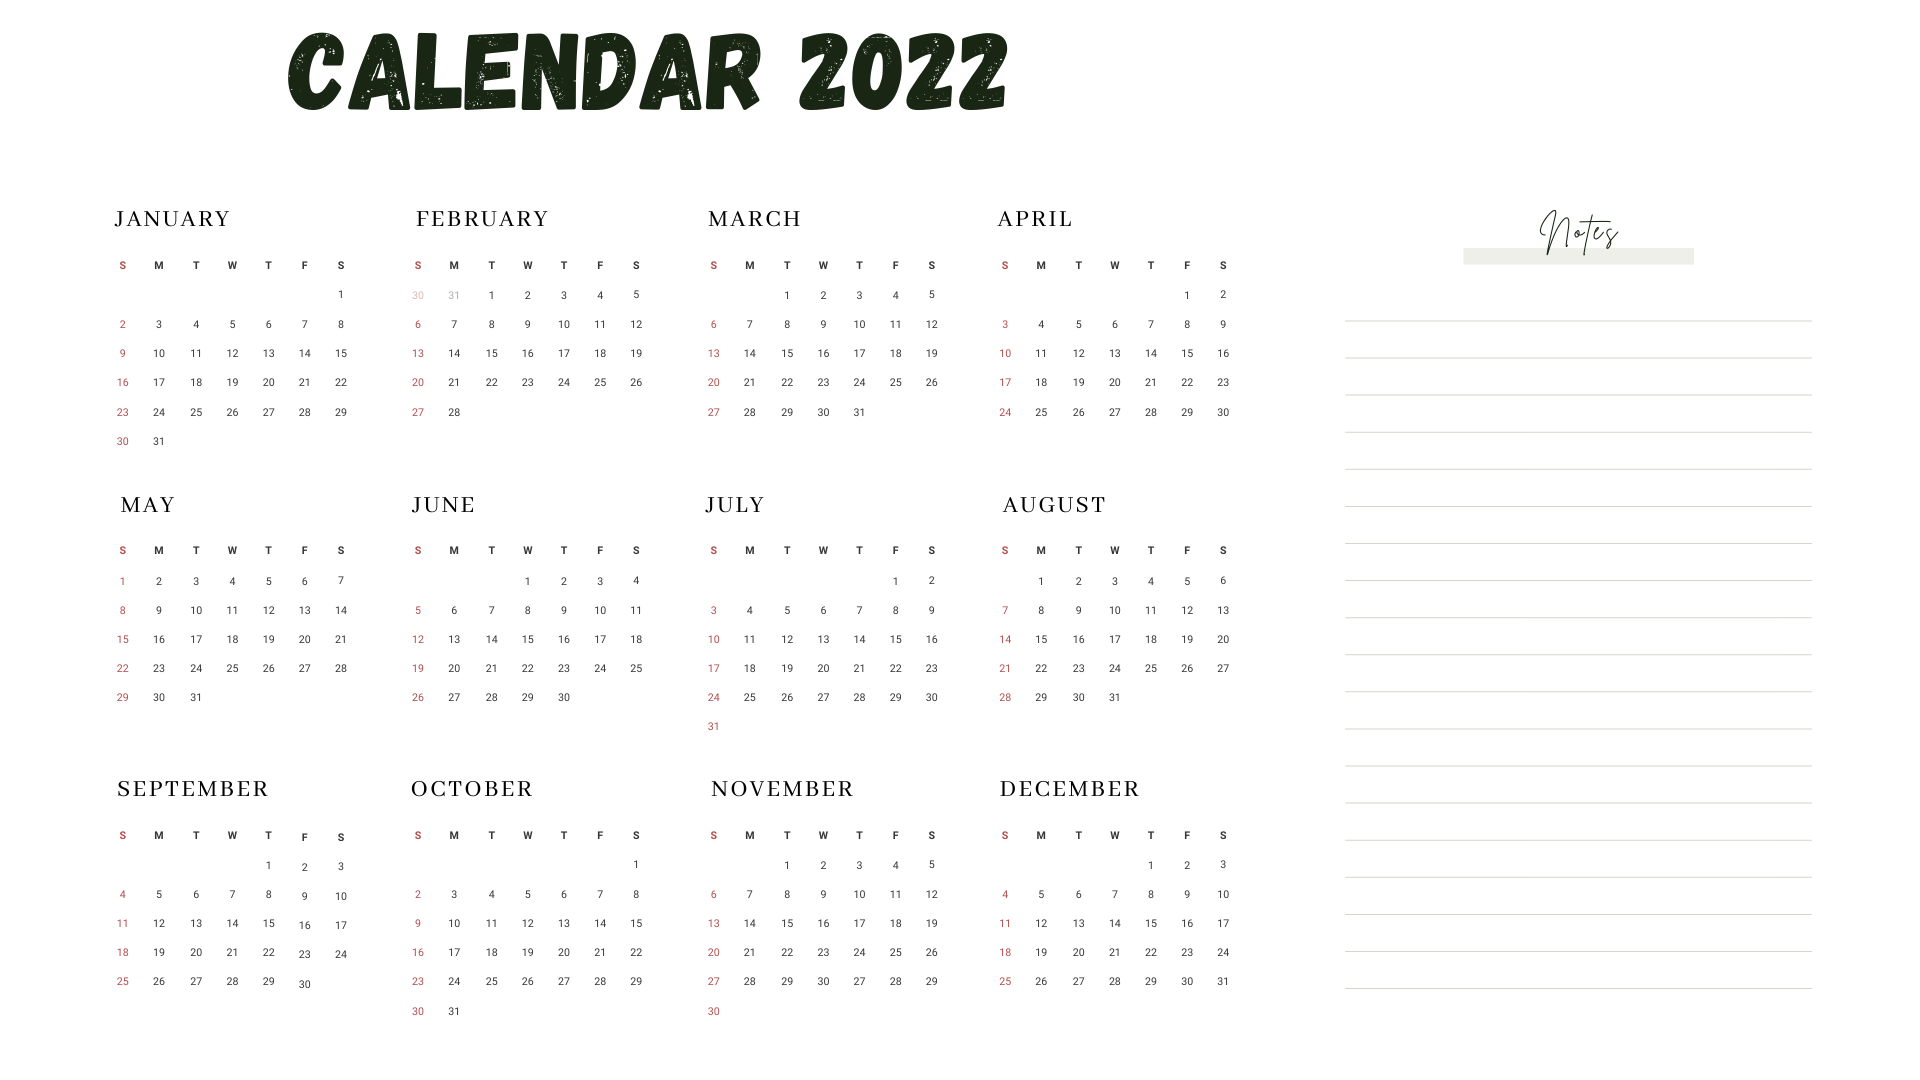 Annual Calendar 2022